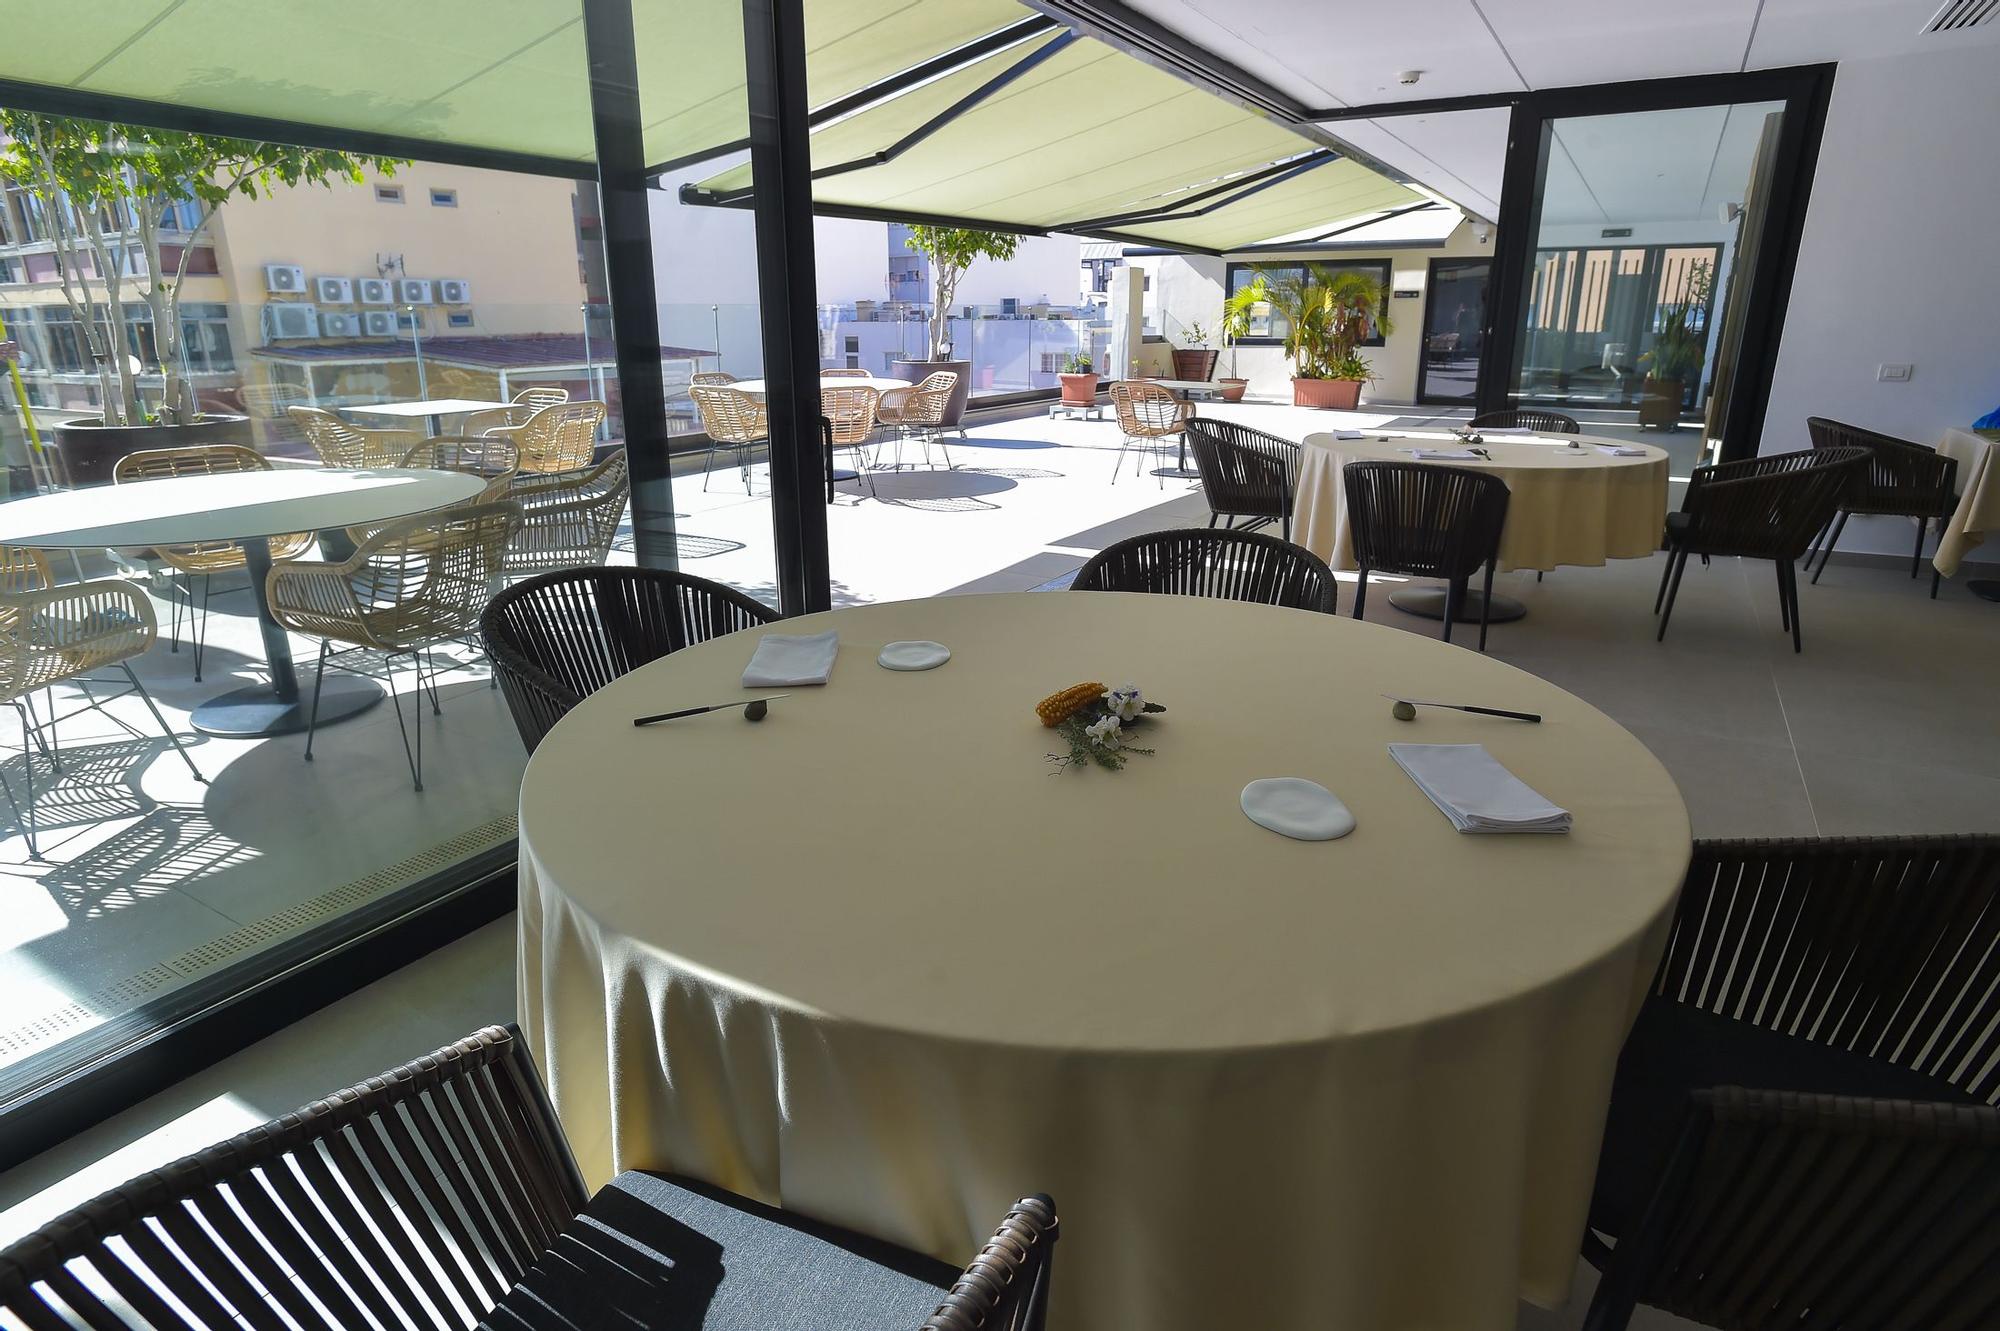 Nace 'Muxgo', el nuevo restaurante de Borja Marrero en Las Palmas de Gran Canaria